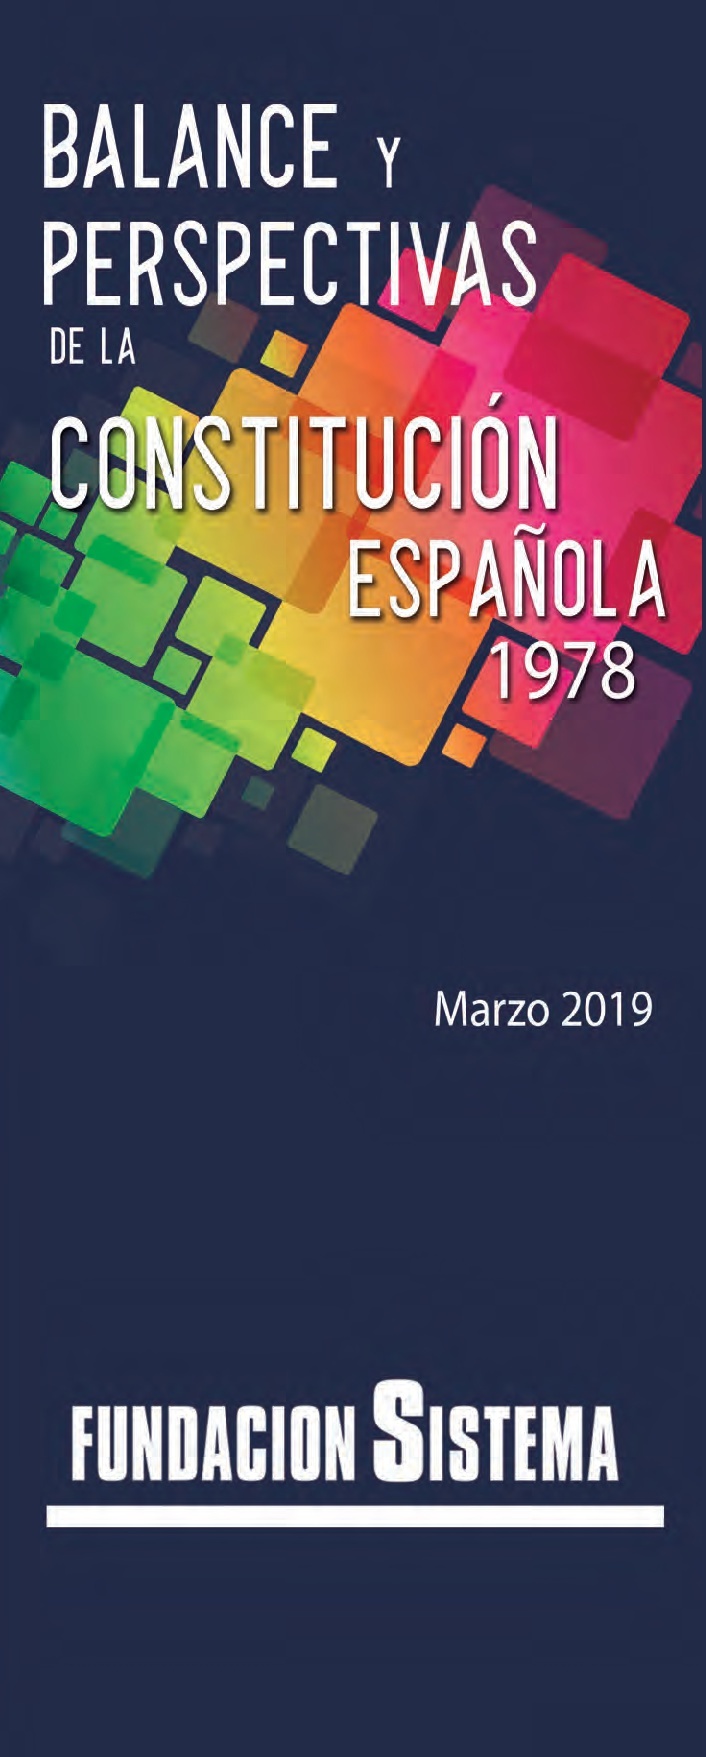 Balance y perspectivas de Constitución Española 1978